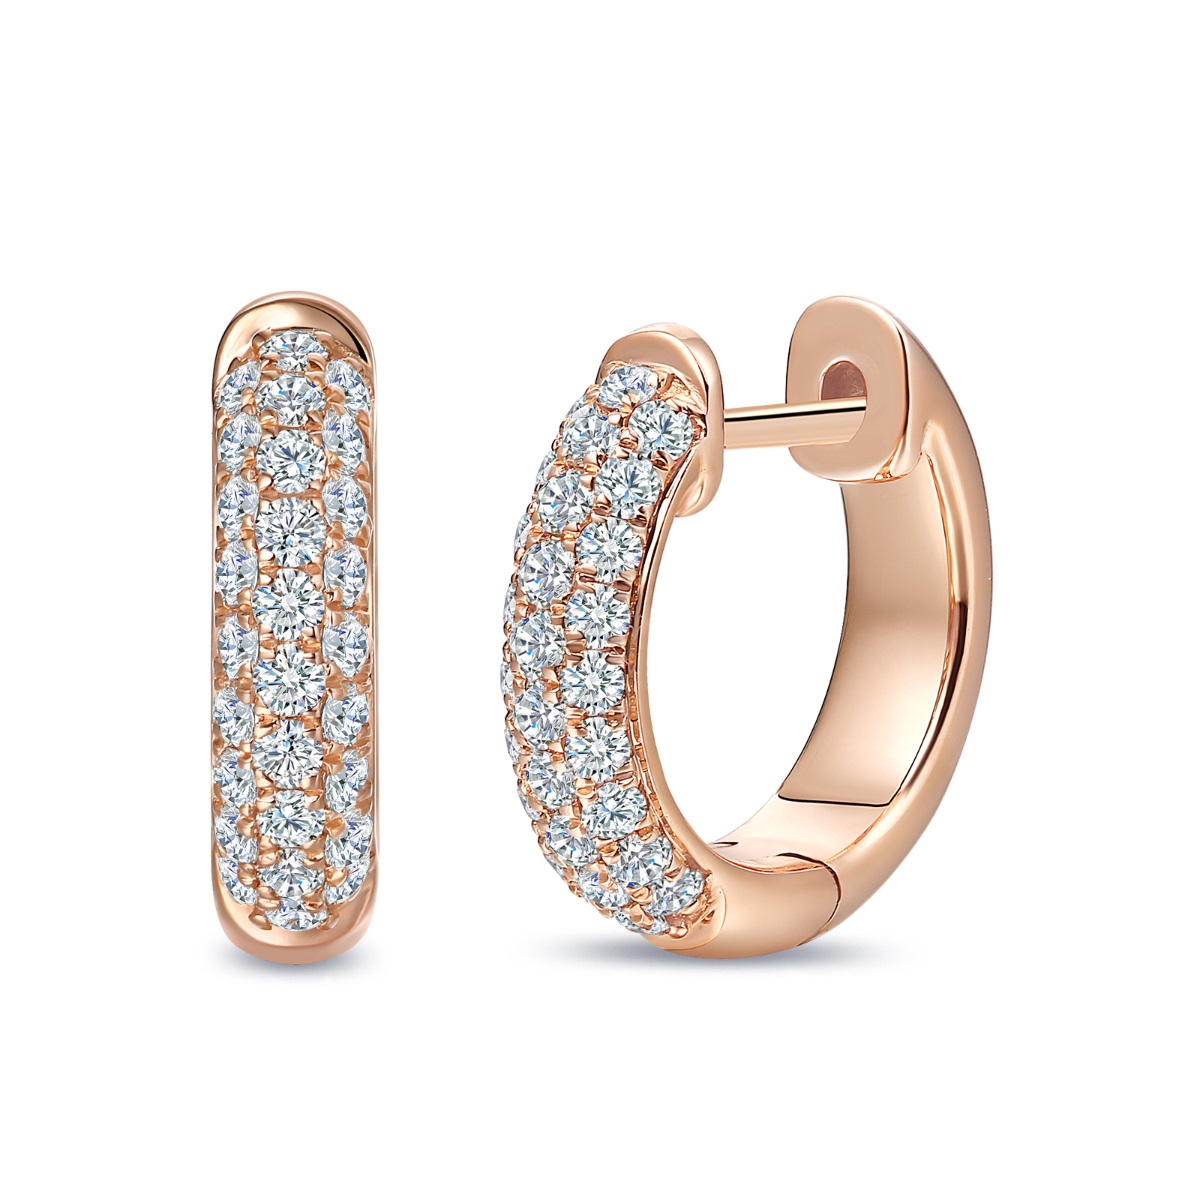 E35355WHT – 18K Rose Gold Diamond Earring, 0.52 TCW